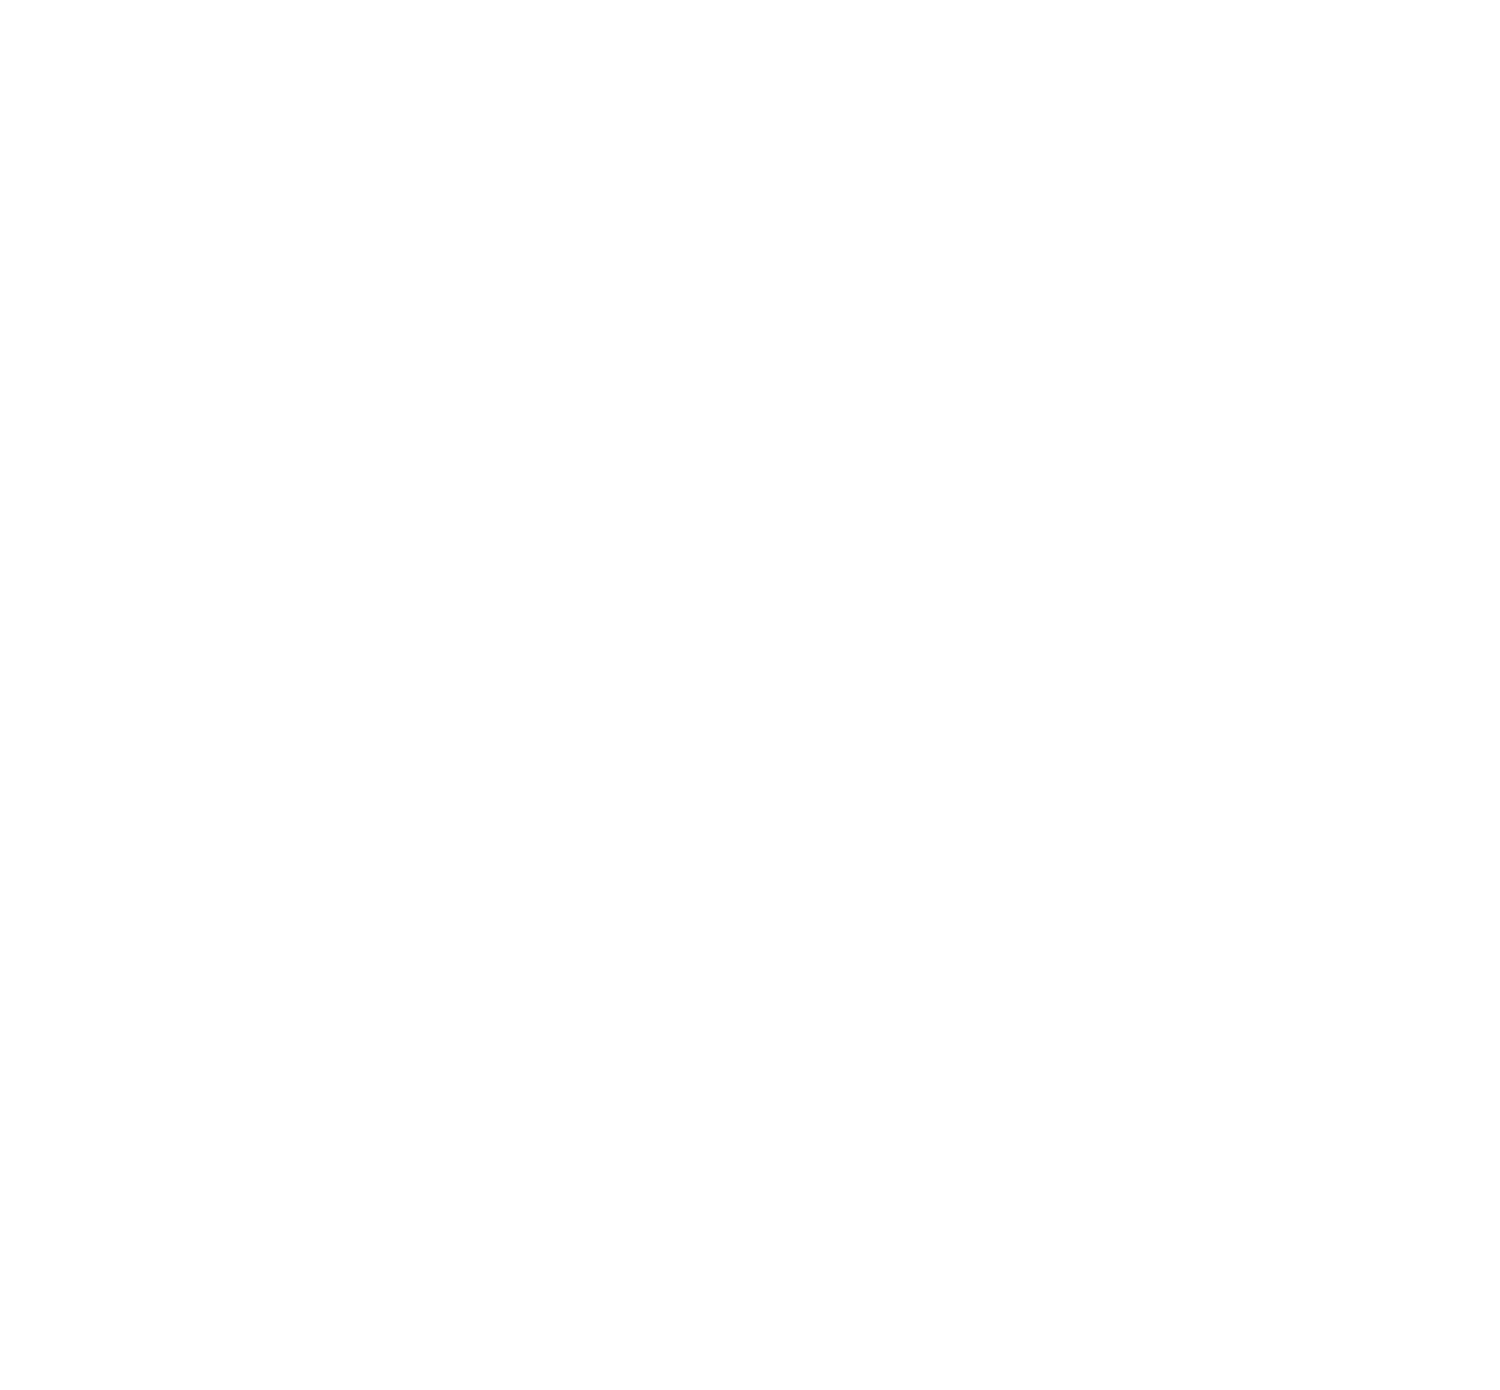 TVOX Creative Agency